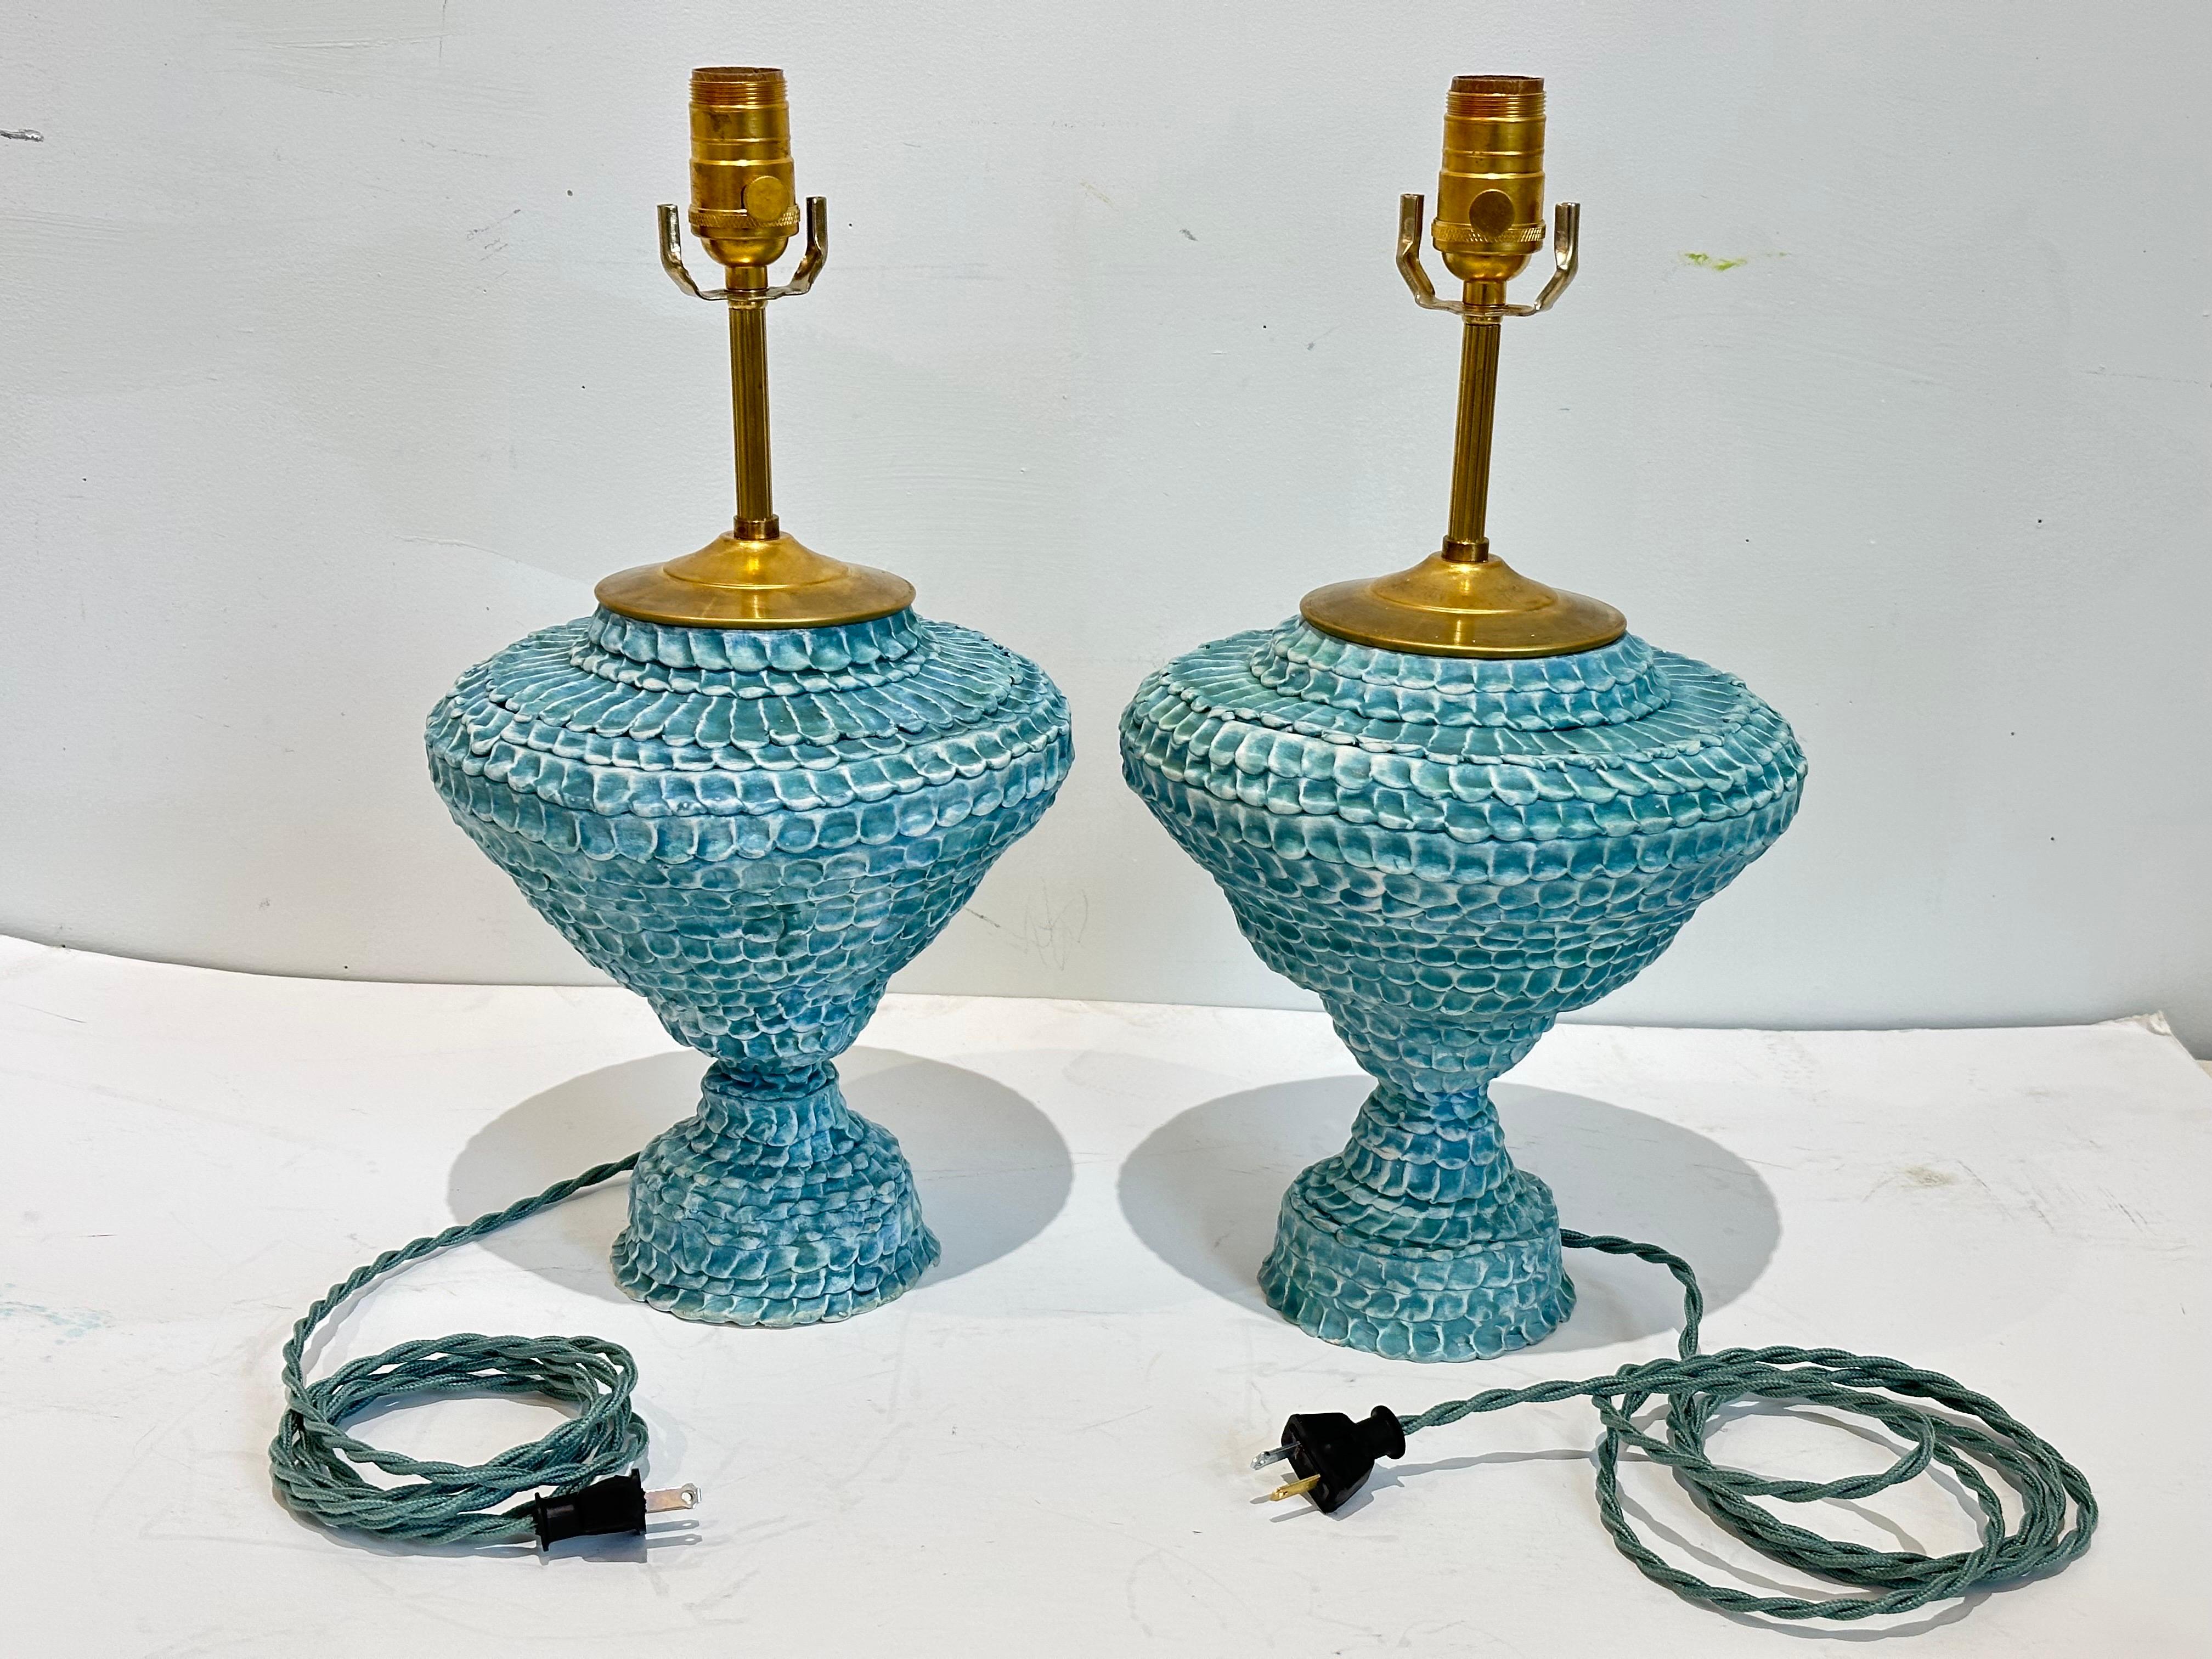 Handgefertigte Urnenlampen aus Keramik in Türkis. Strukturierte Oberfläche mit variablem Türkis bis Türkis-Grün in matt gewachster Ausführung.  Alle Beschläge sind aus reinem Messing.  
Keramik-Körper ist 10 